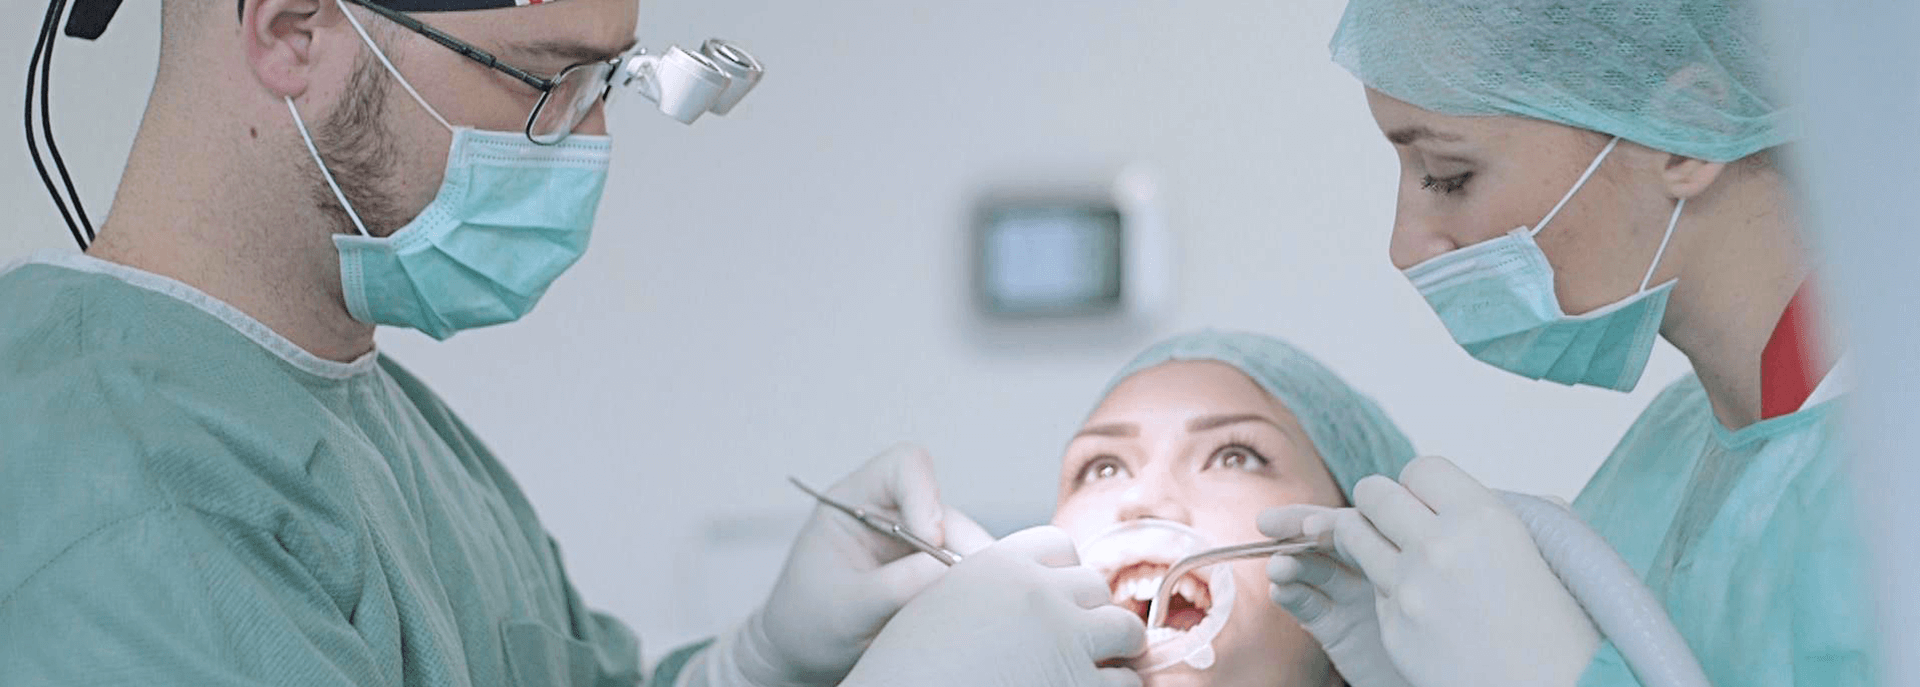 Cirugías dentales